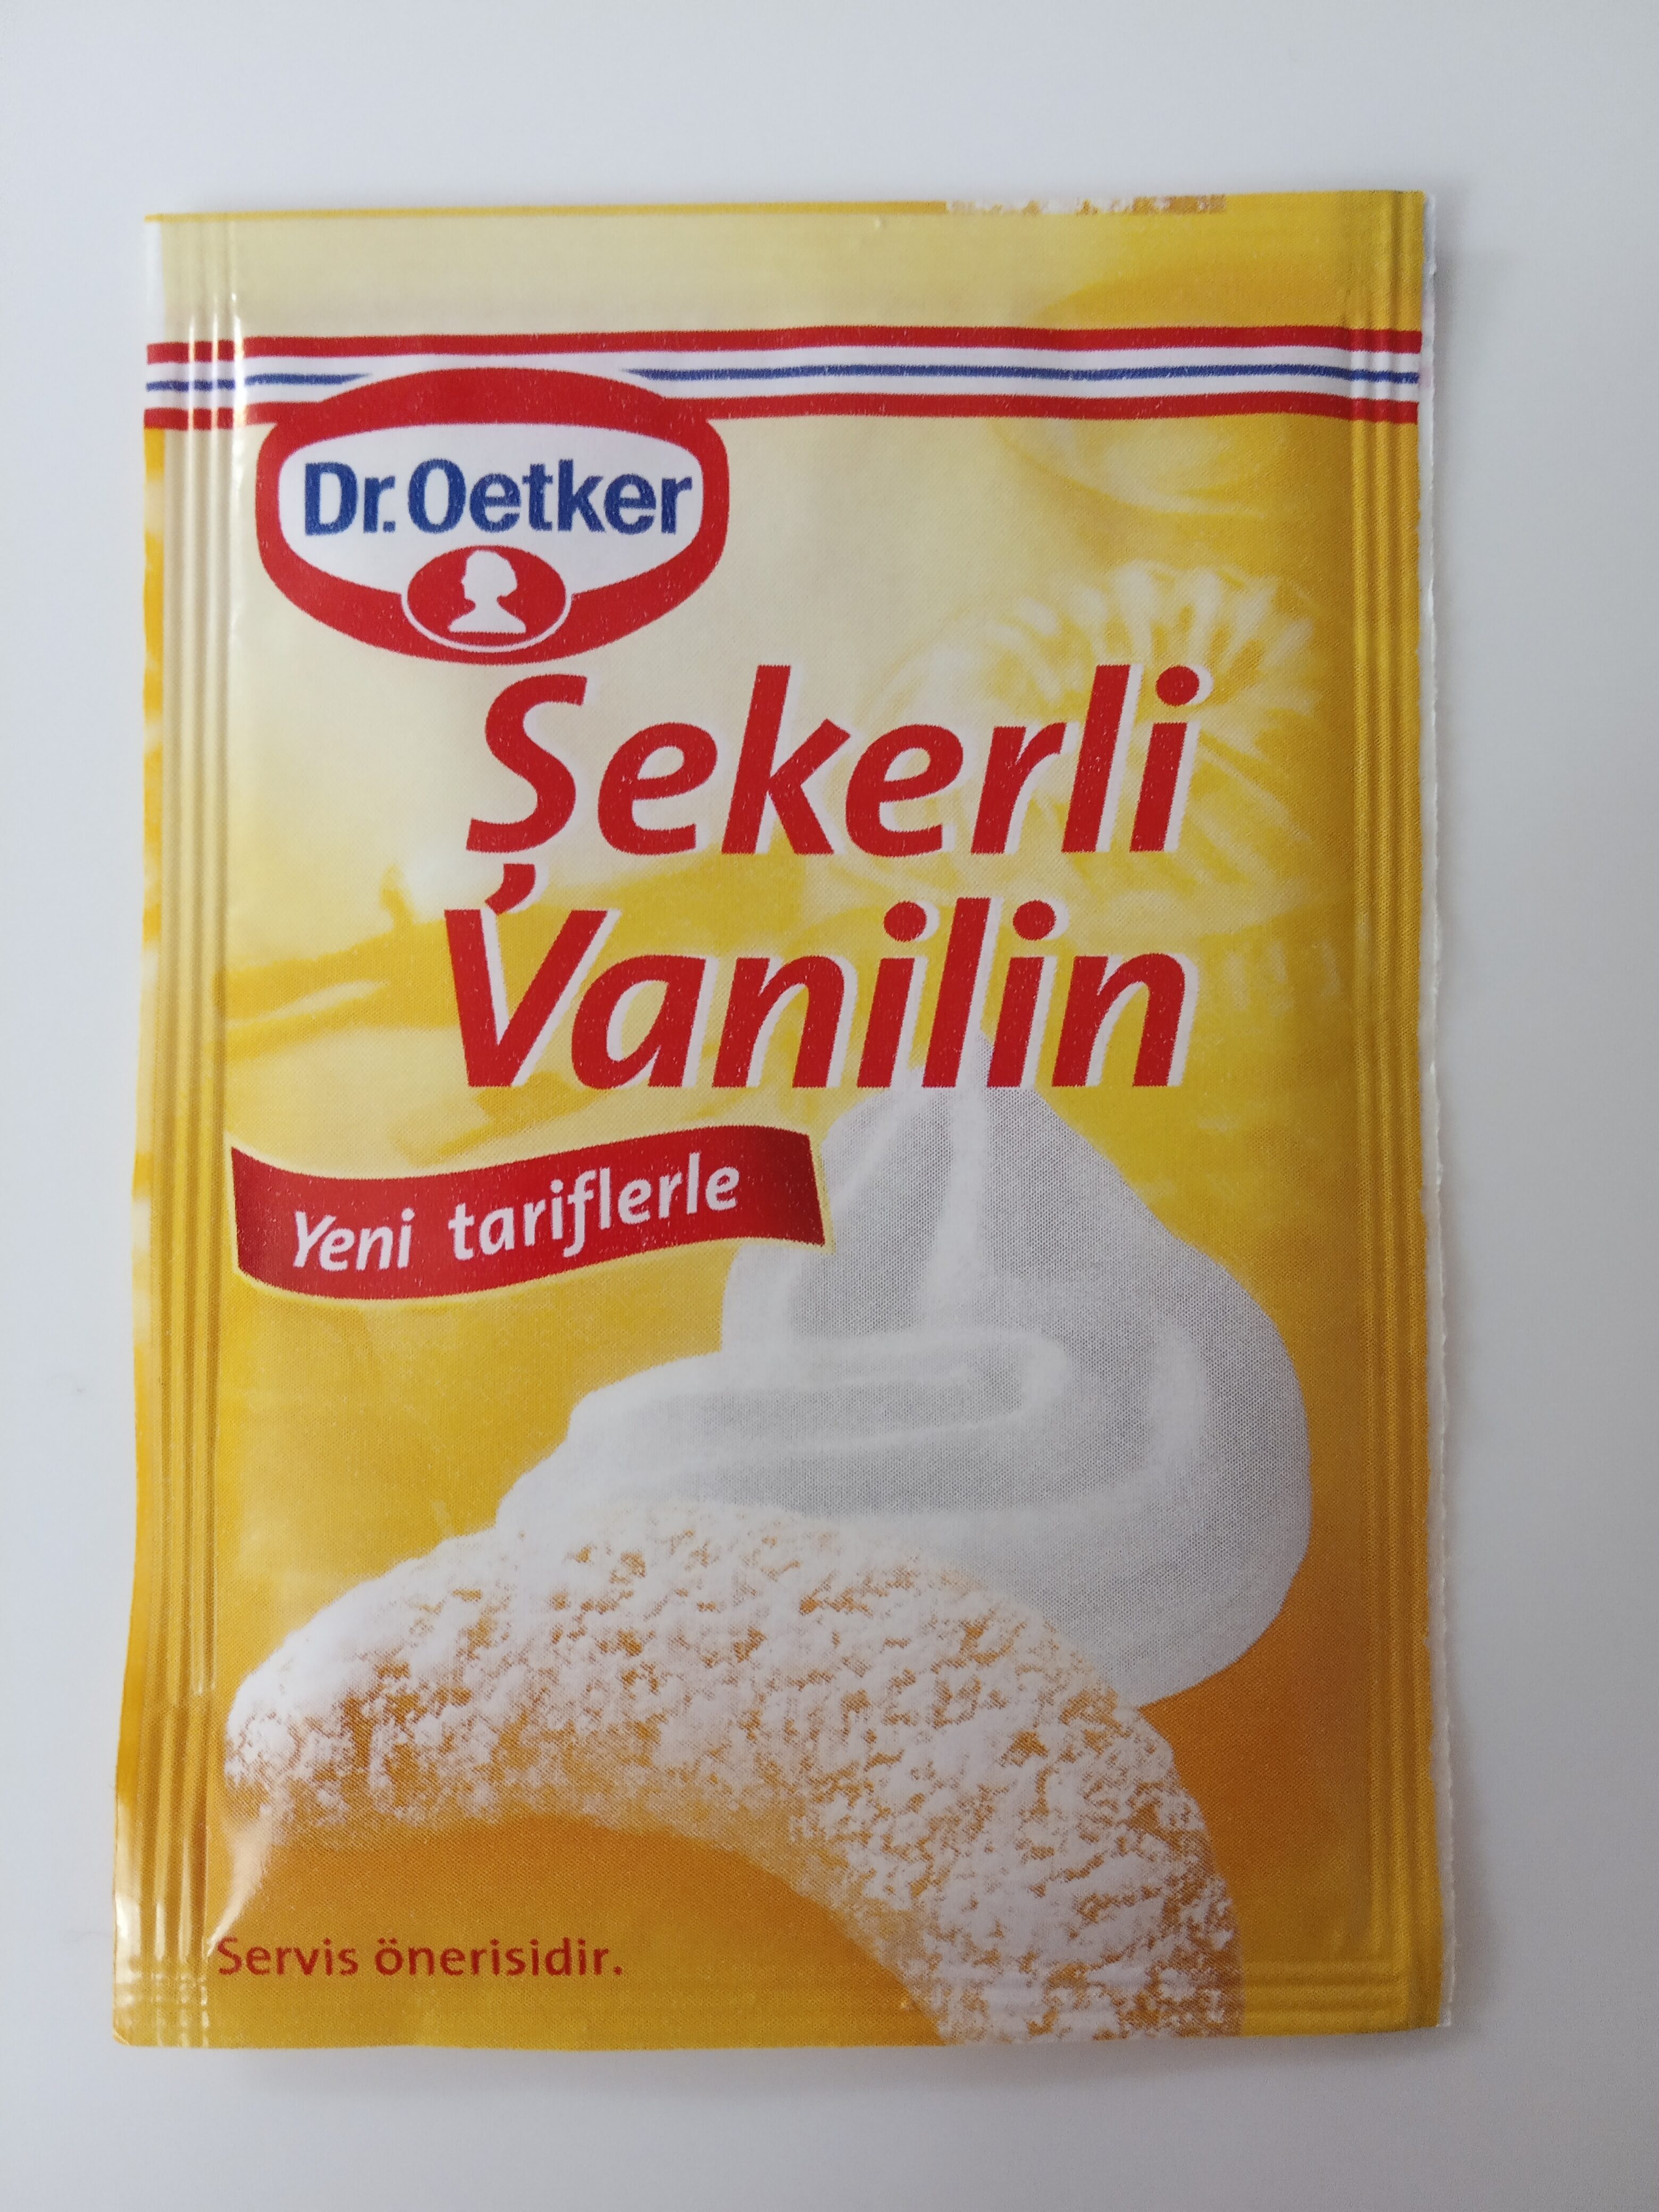 Dr. Oetker Şekerli Vanilin - Ürün - tr